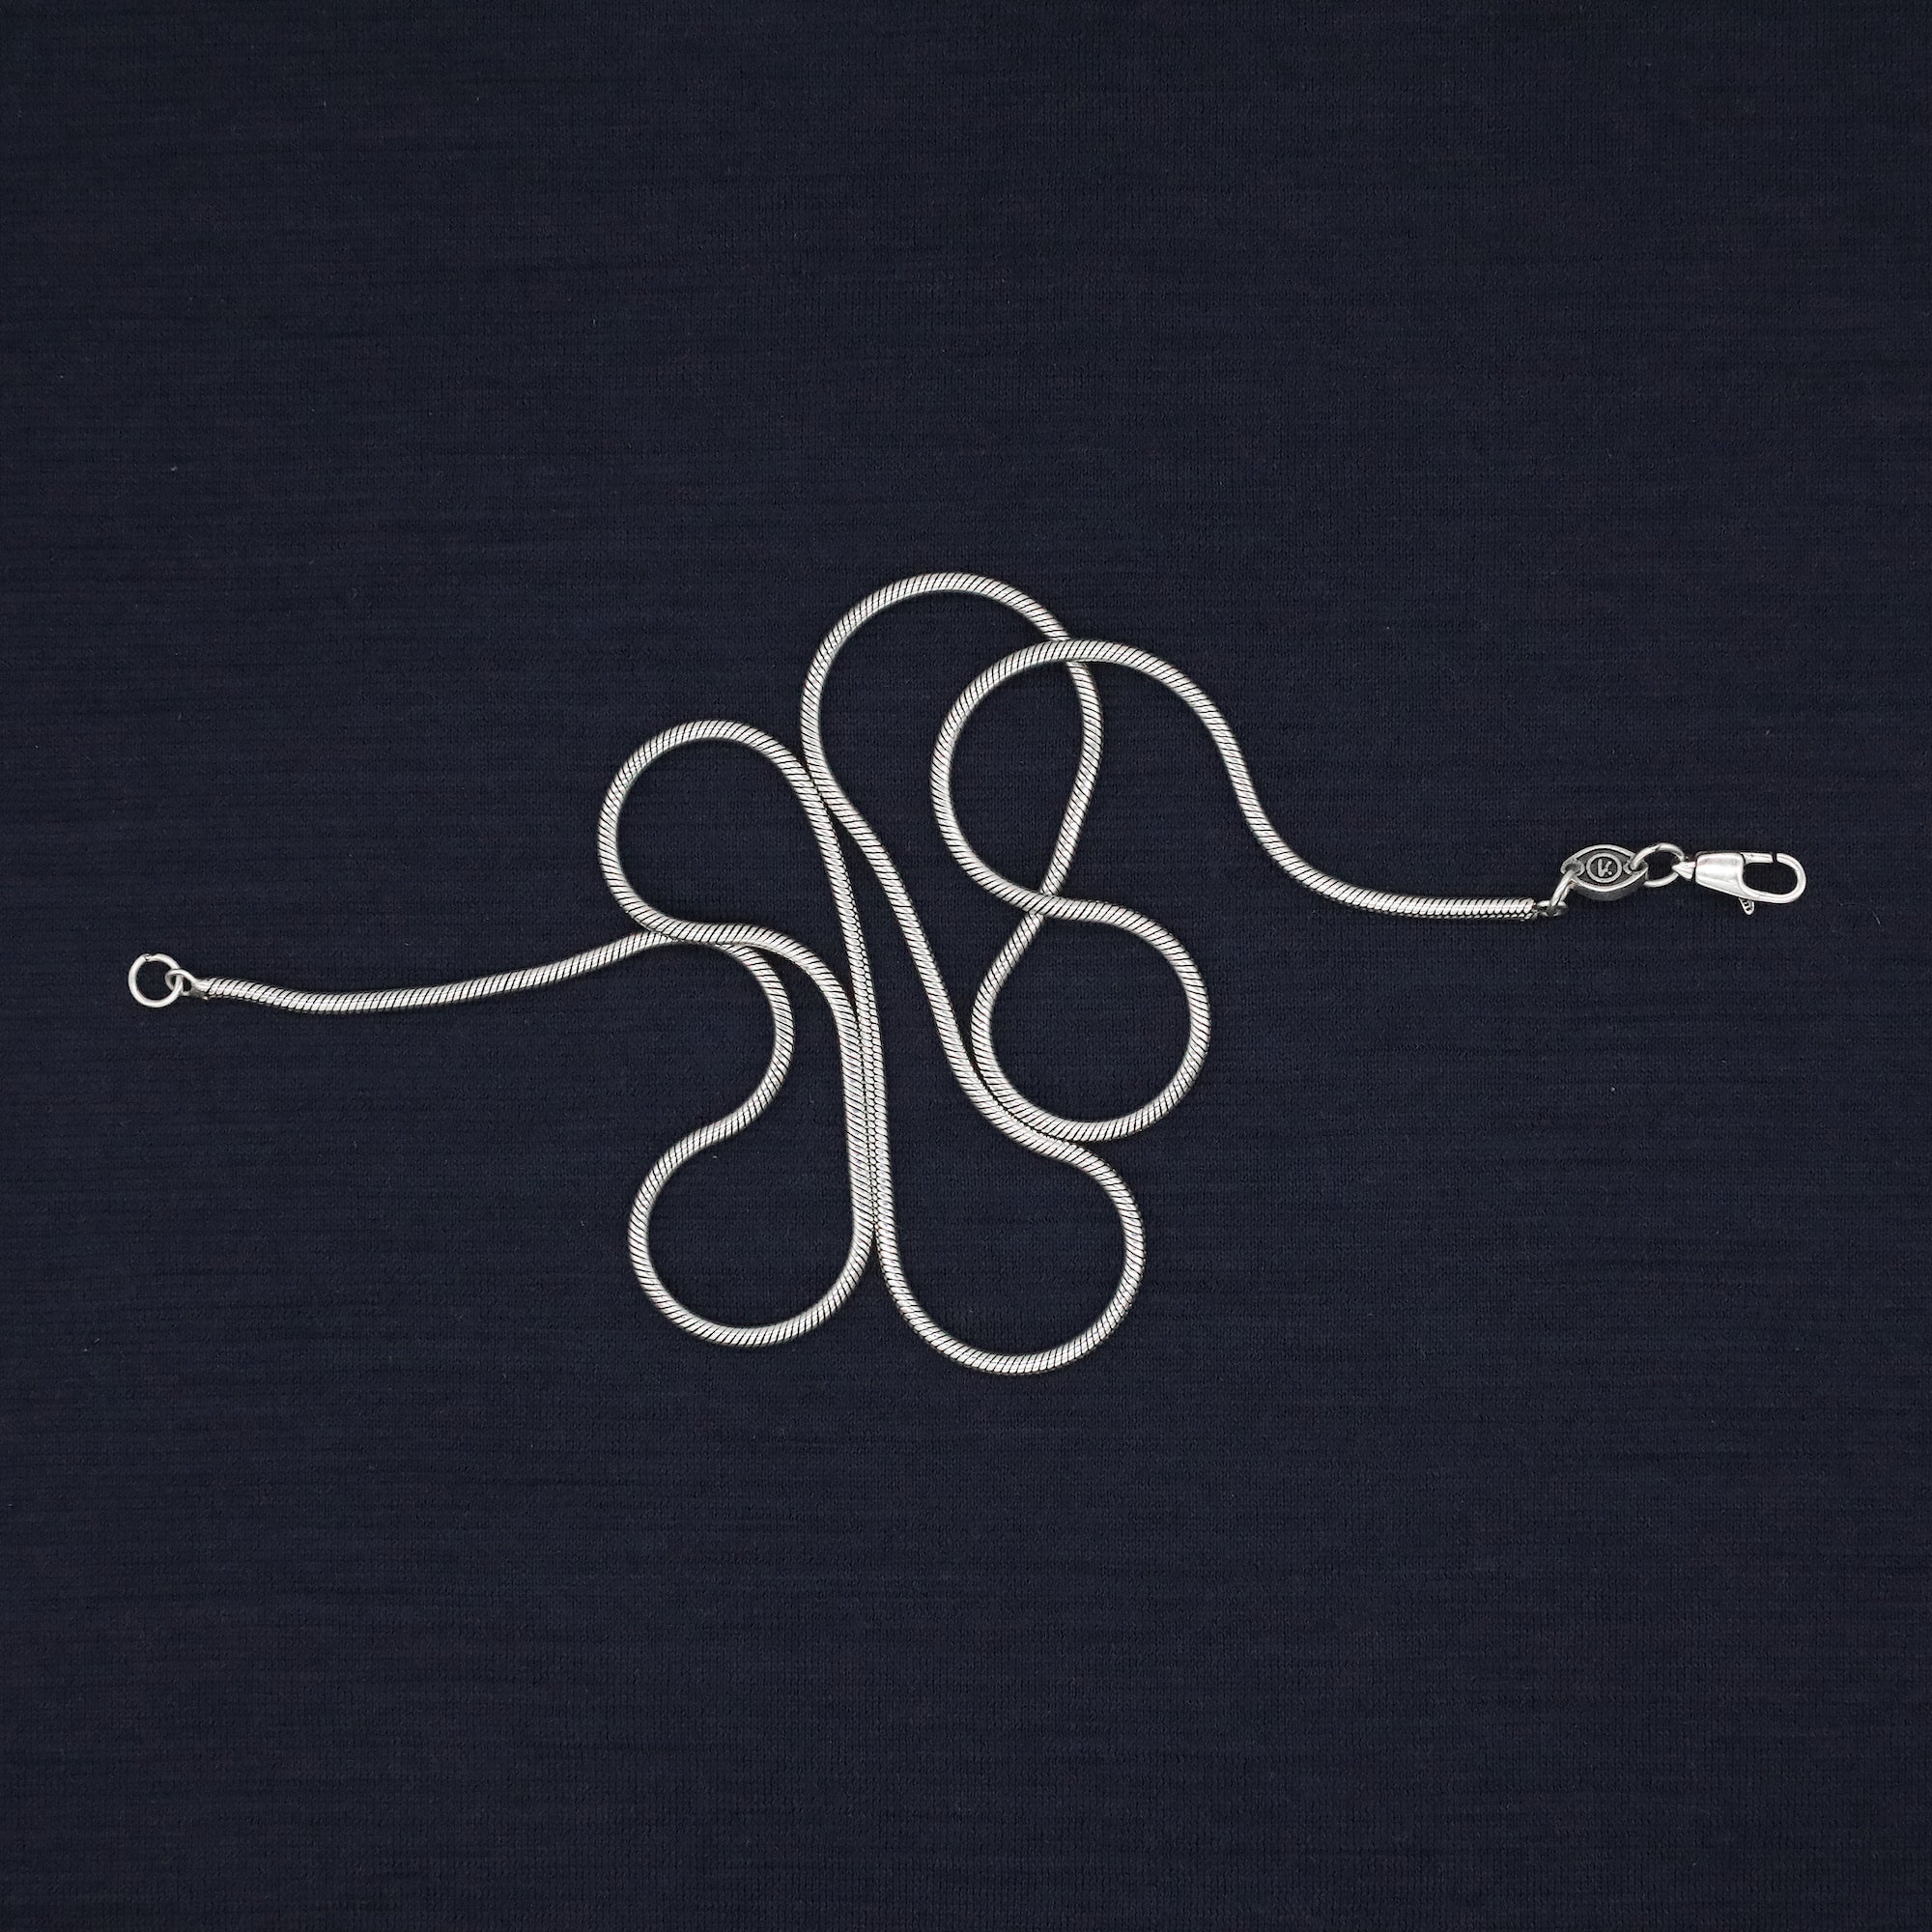 2.5mm Sterling Silver Snake Chain Necklace-Necklace-Kompsós